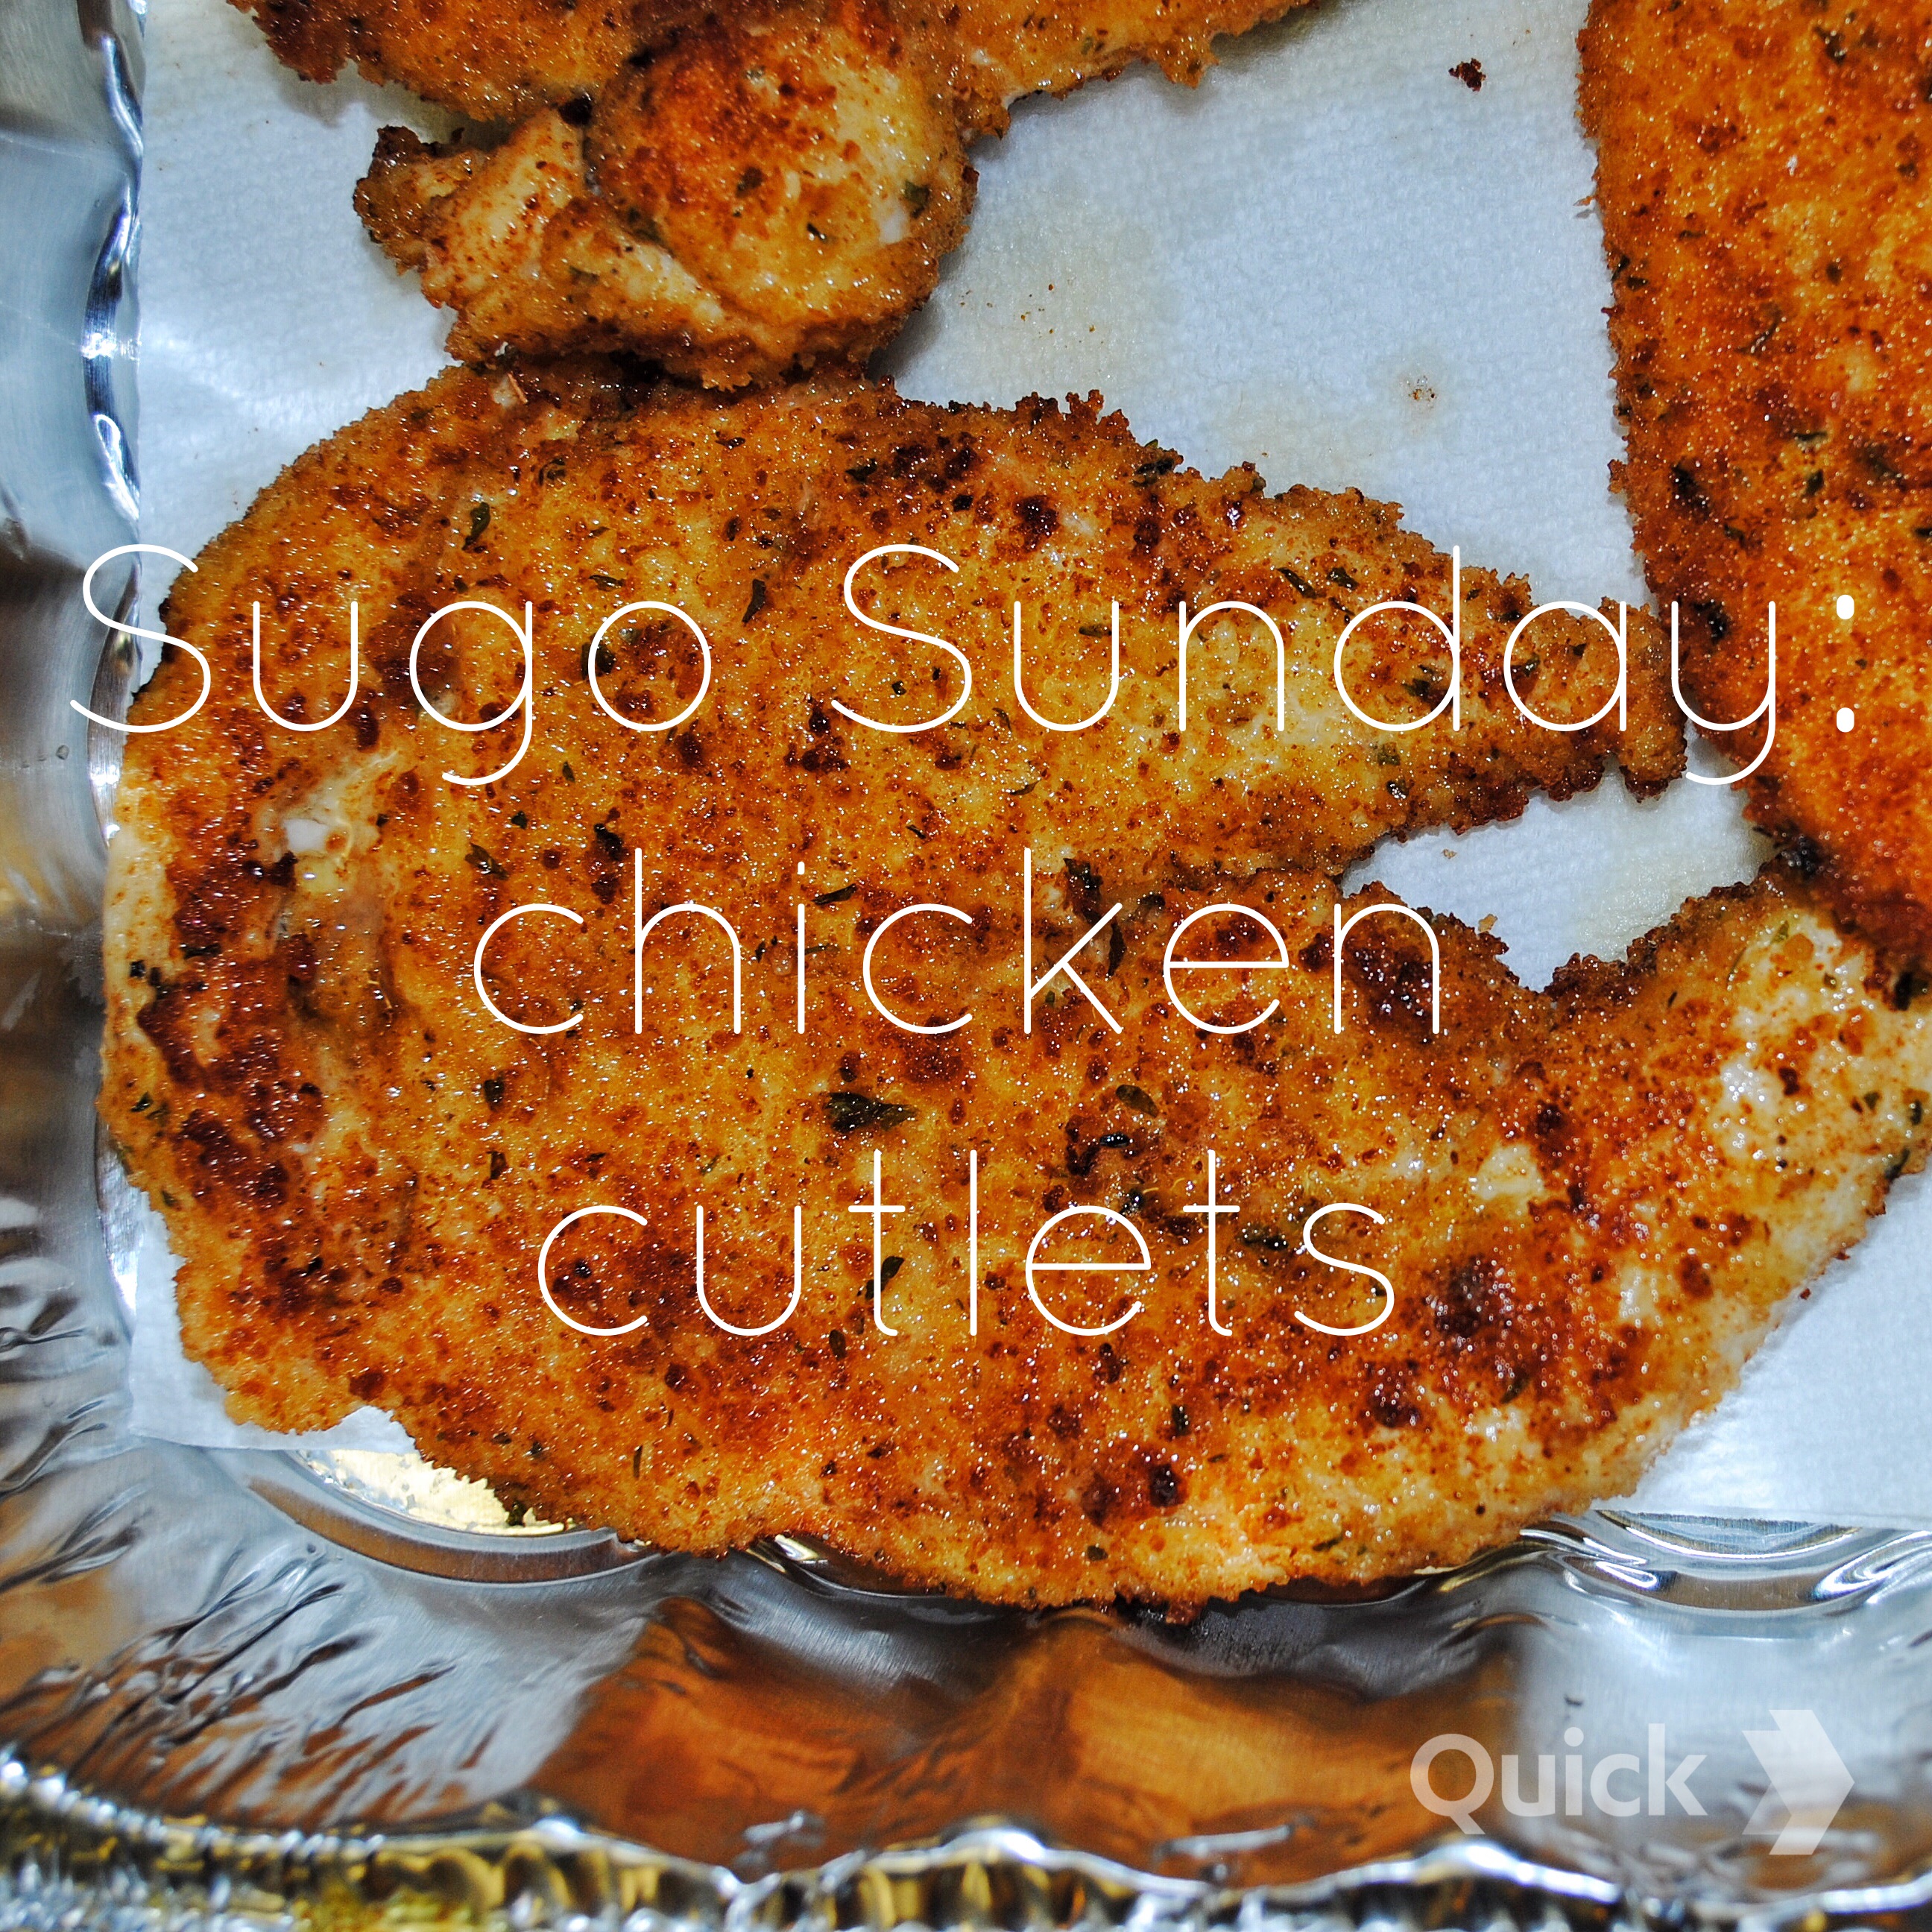 Chicken cutlets